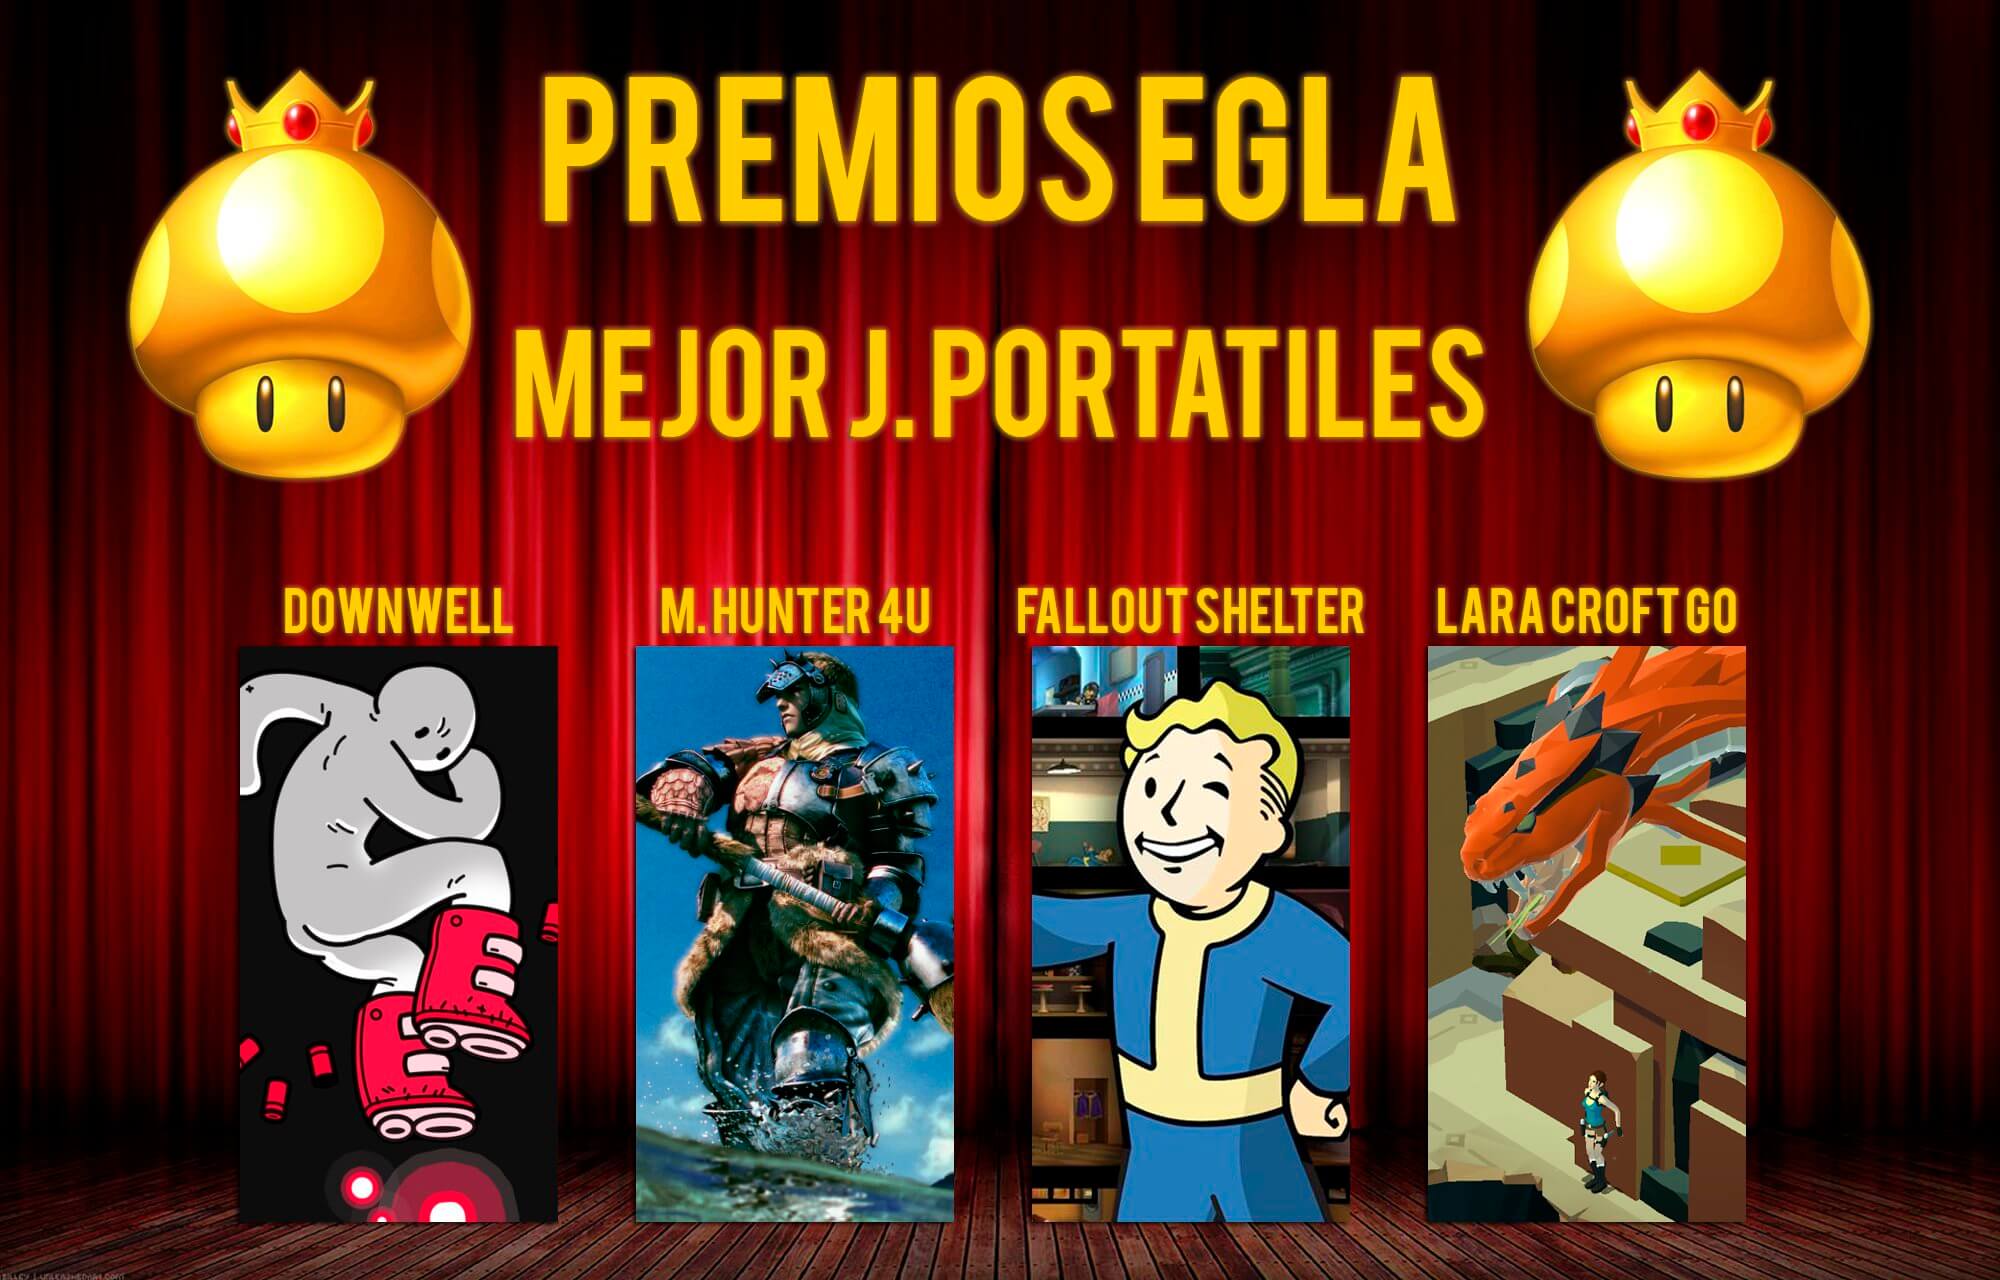 Premios EGLA 2015 Mejor juego para portátiles